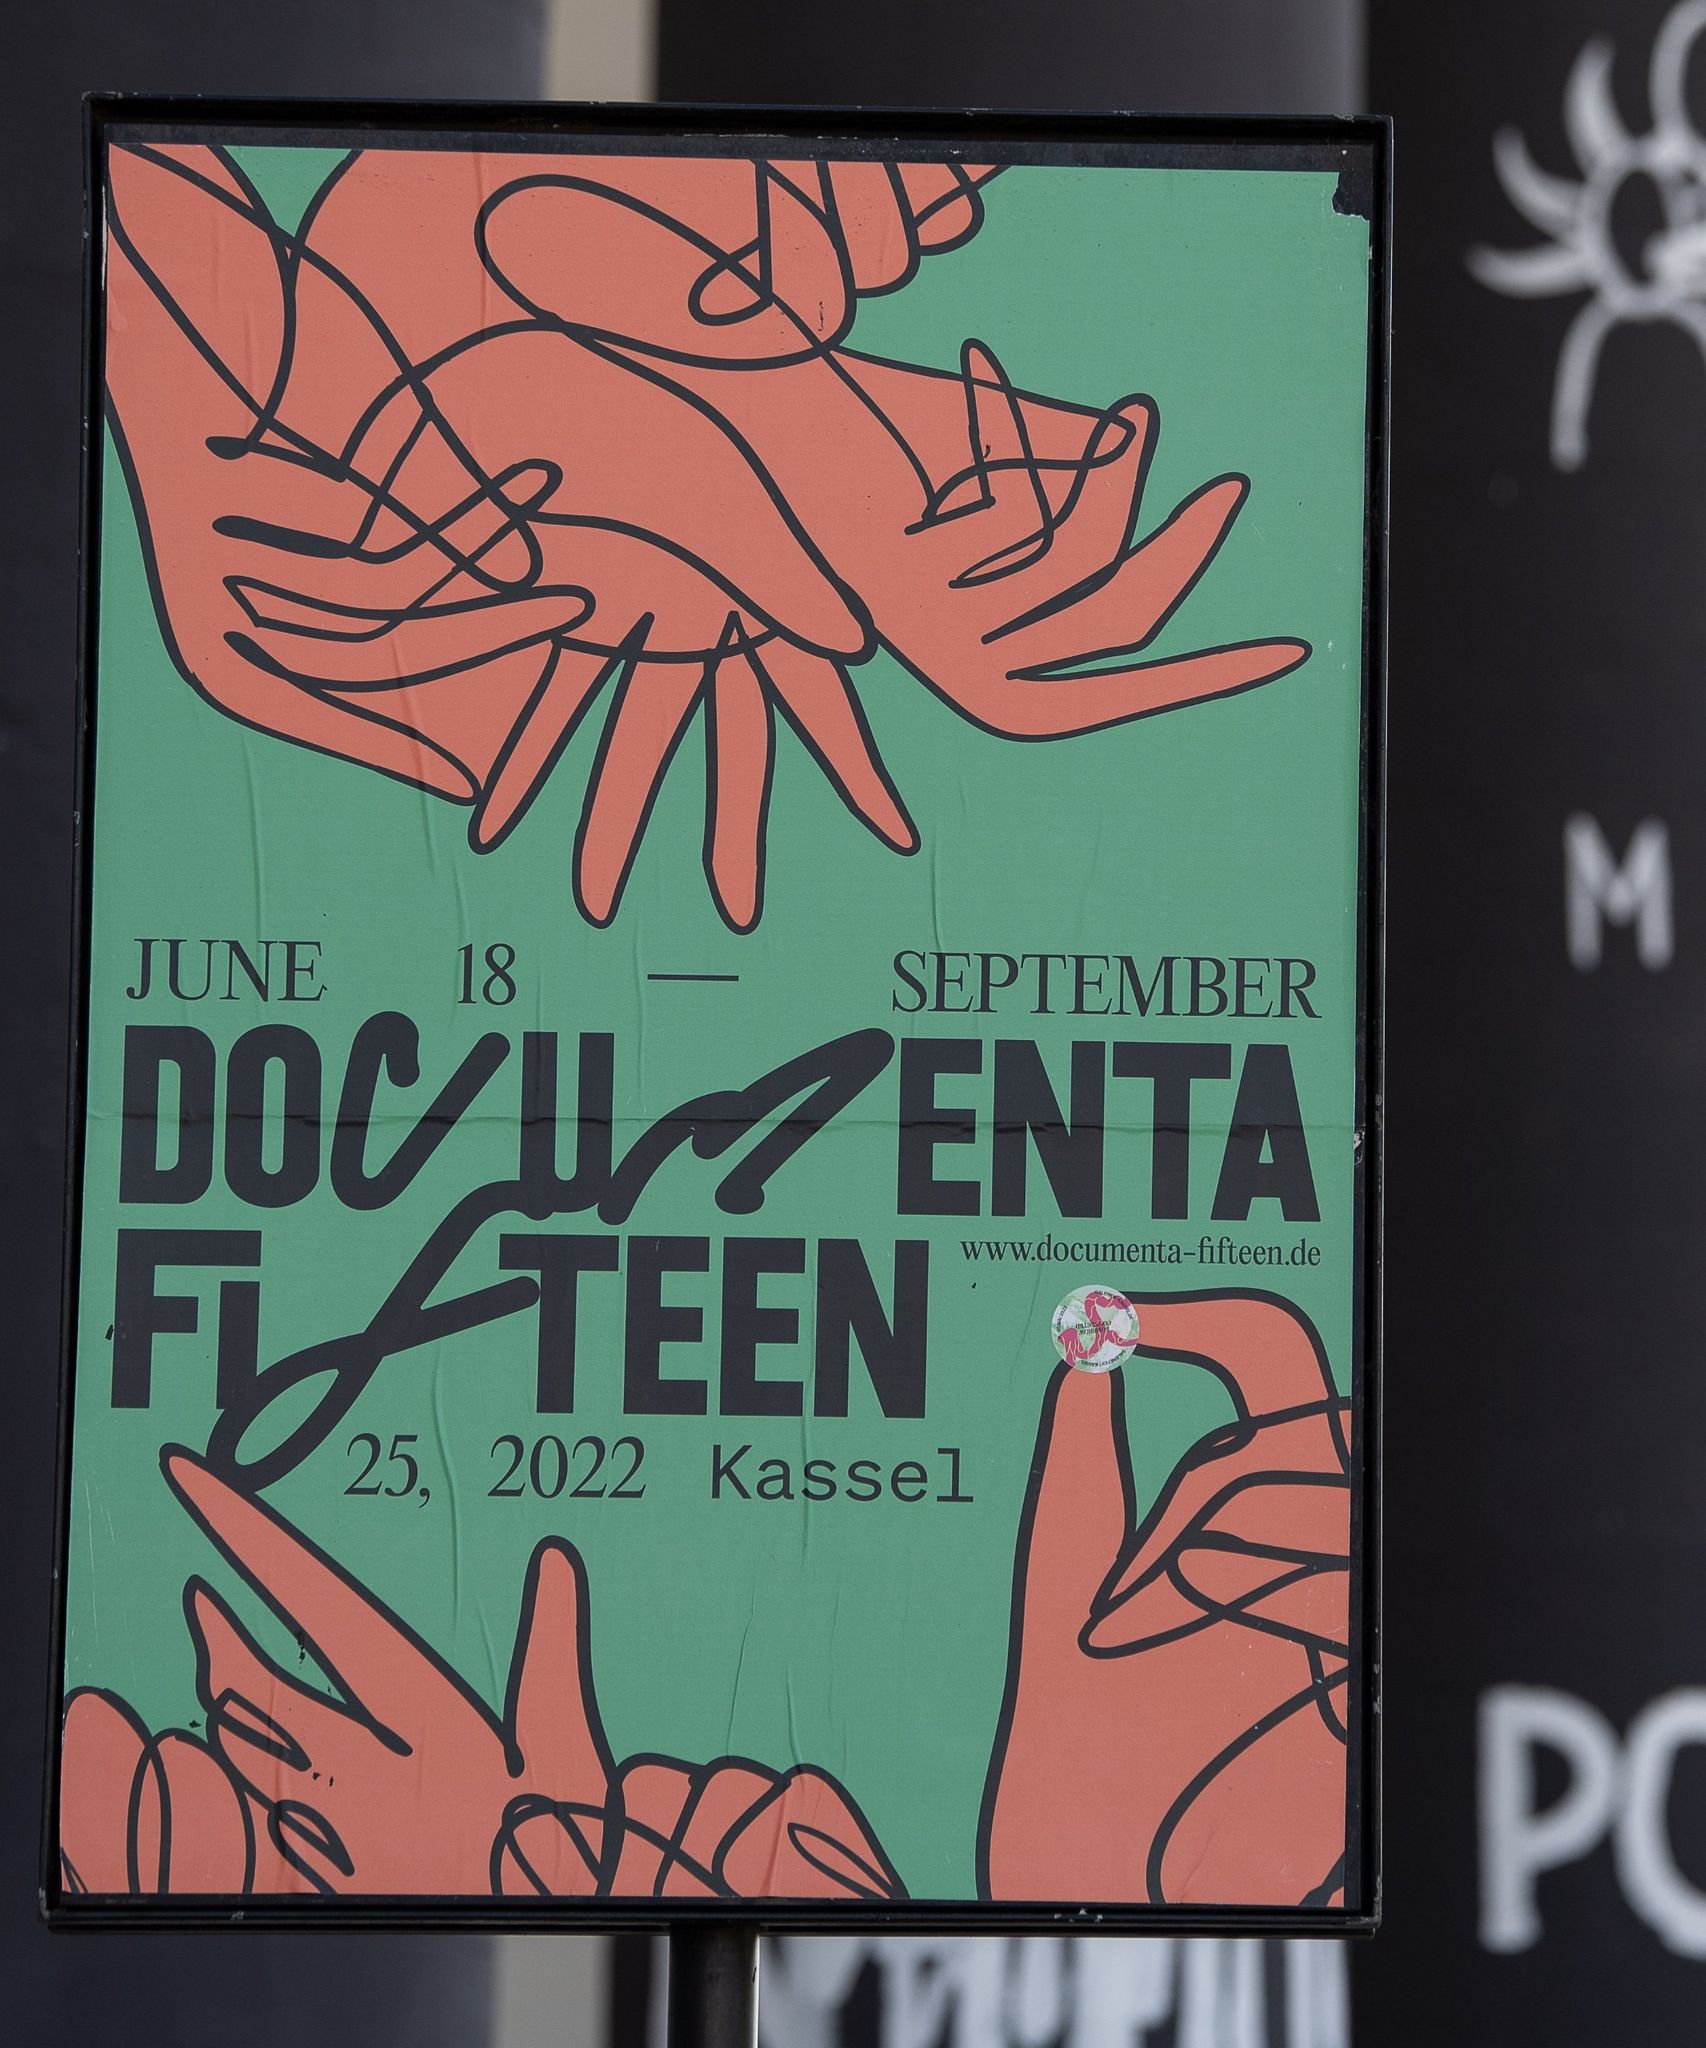 Ein Plakat zur documenta fifteen.